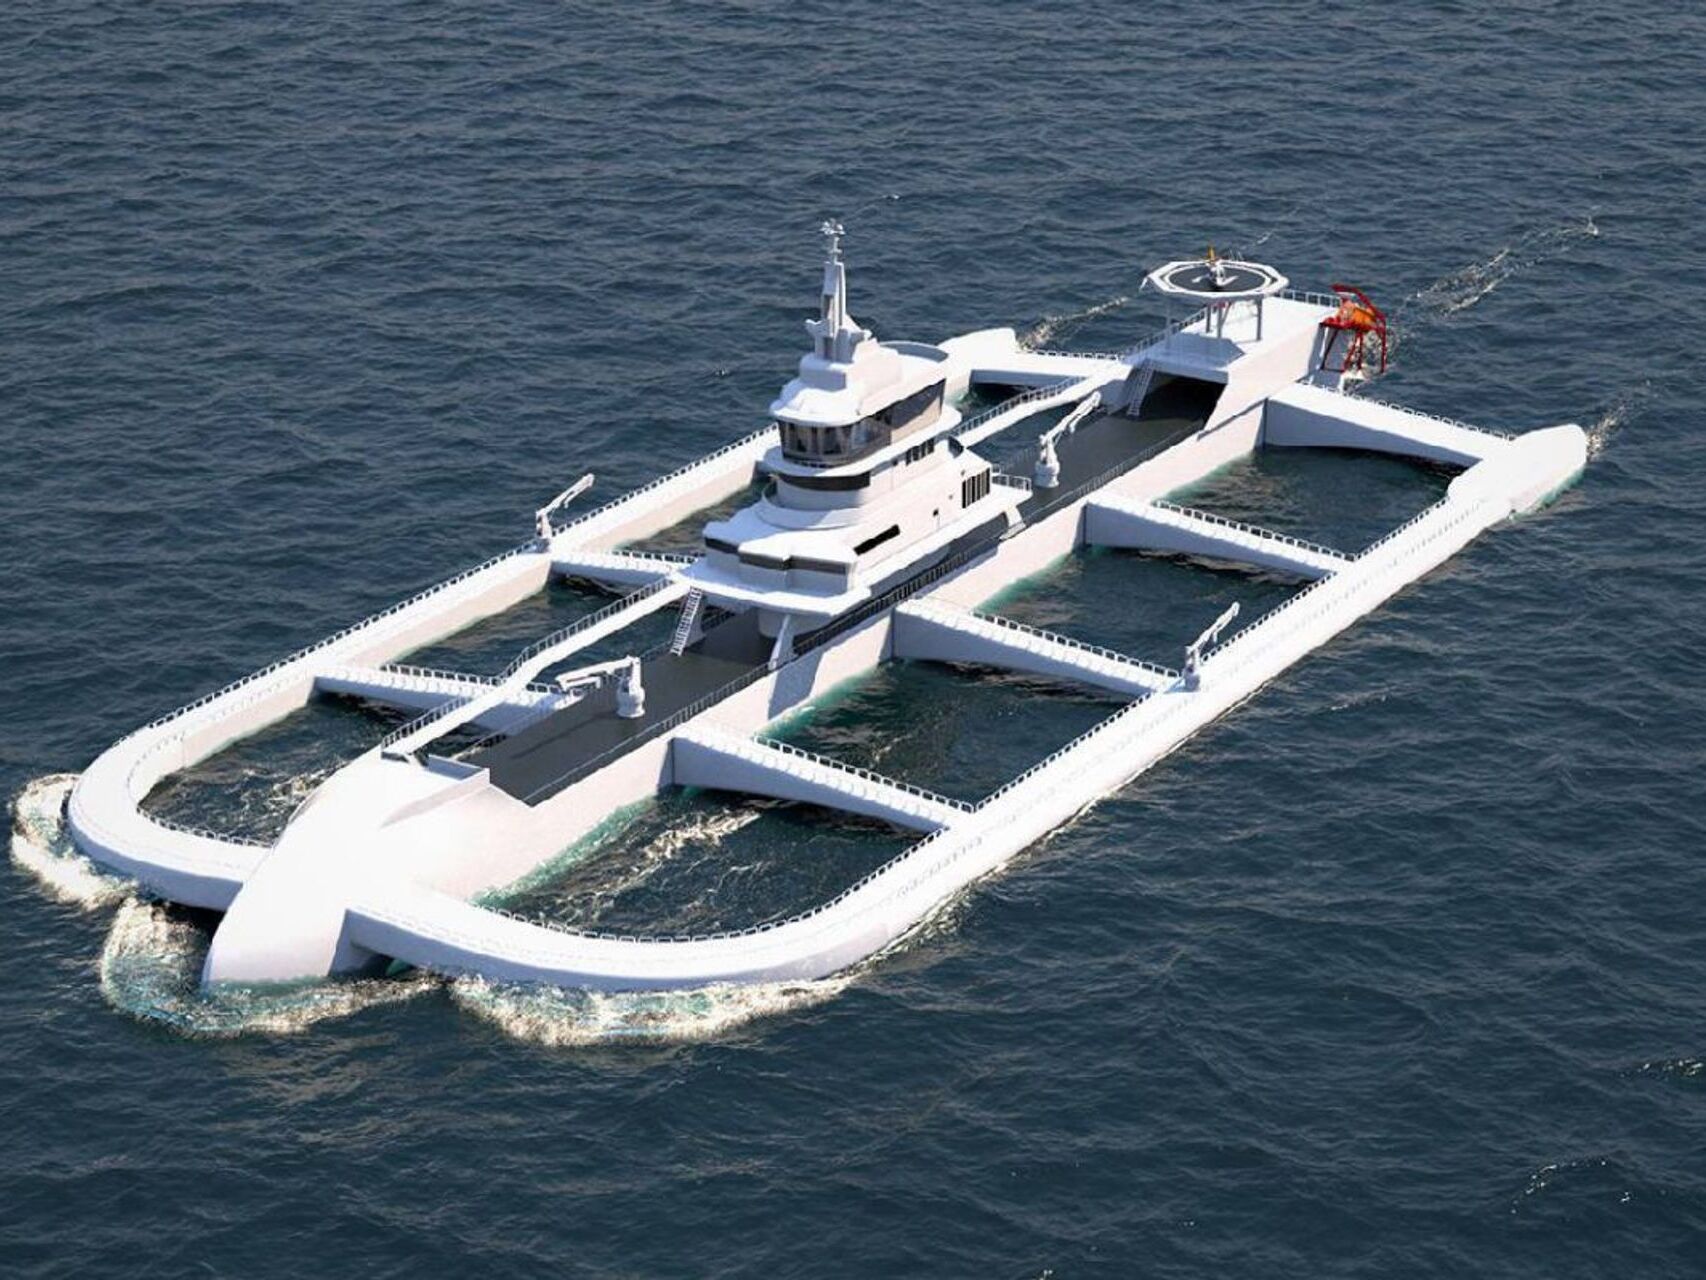 Arka e Oqeanit është një trimaran 170 metra i gjatë, i asistuar nga AI, me emetime të ulëta, i projektuar me stilolapsa peshku bakri vetë-pastrues, të aftë për të kërkuar ujërat më të mira.